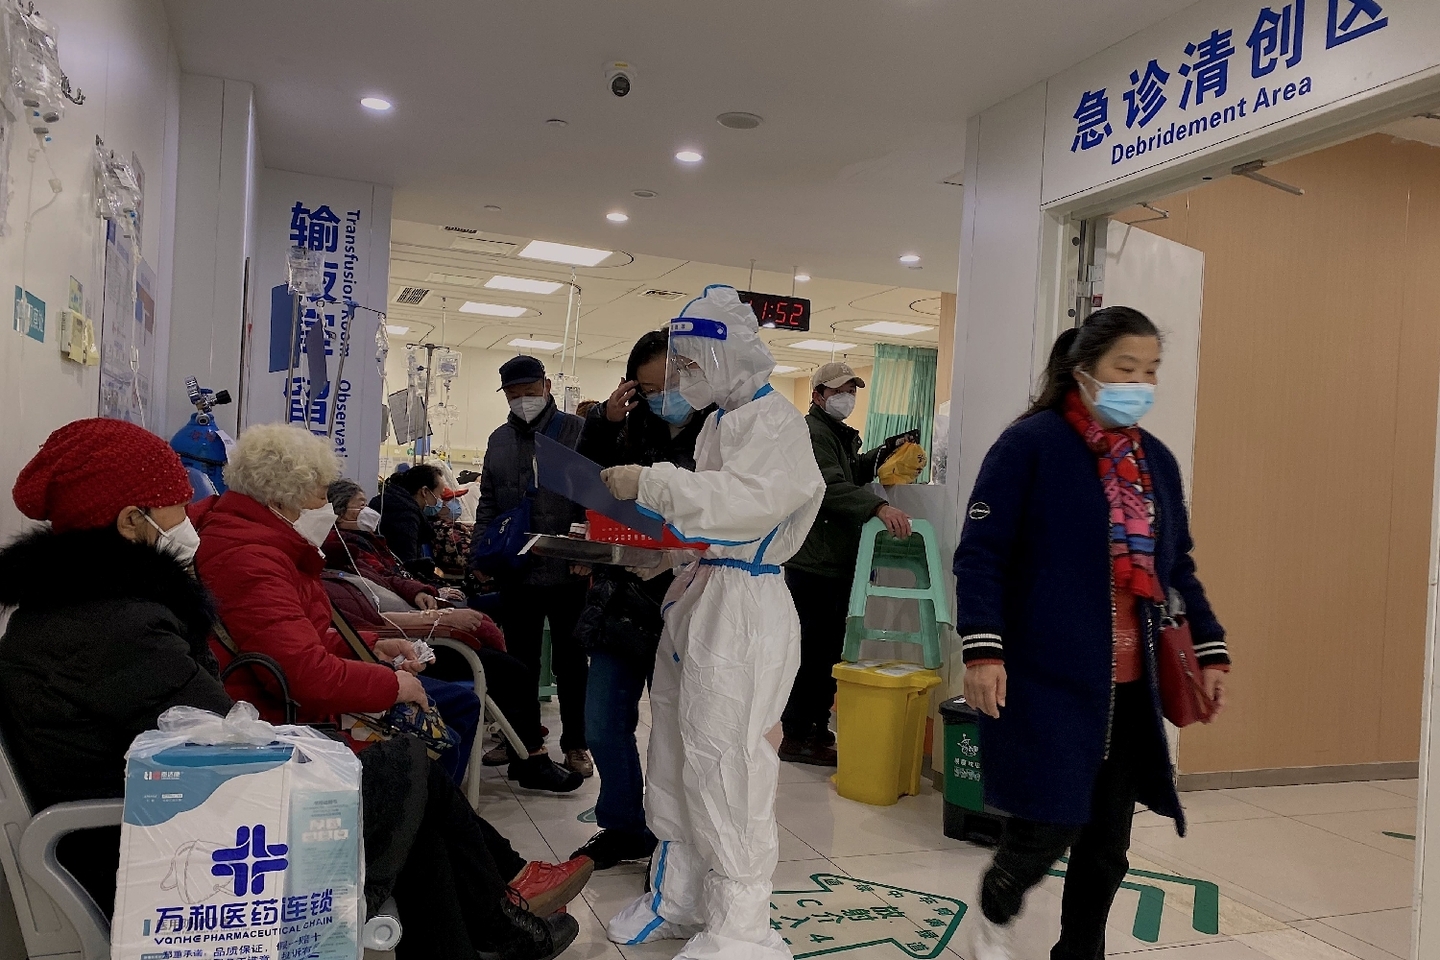 l'oms inquiète d'une hausse de maladies respiratoires en chine, demande à la population de se protéger